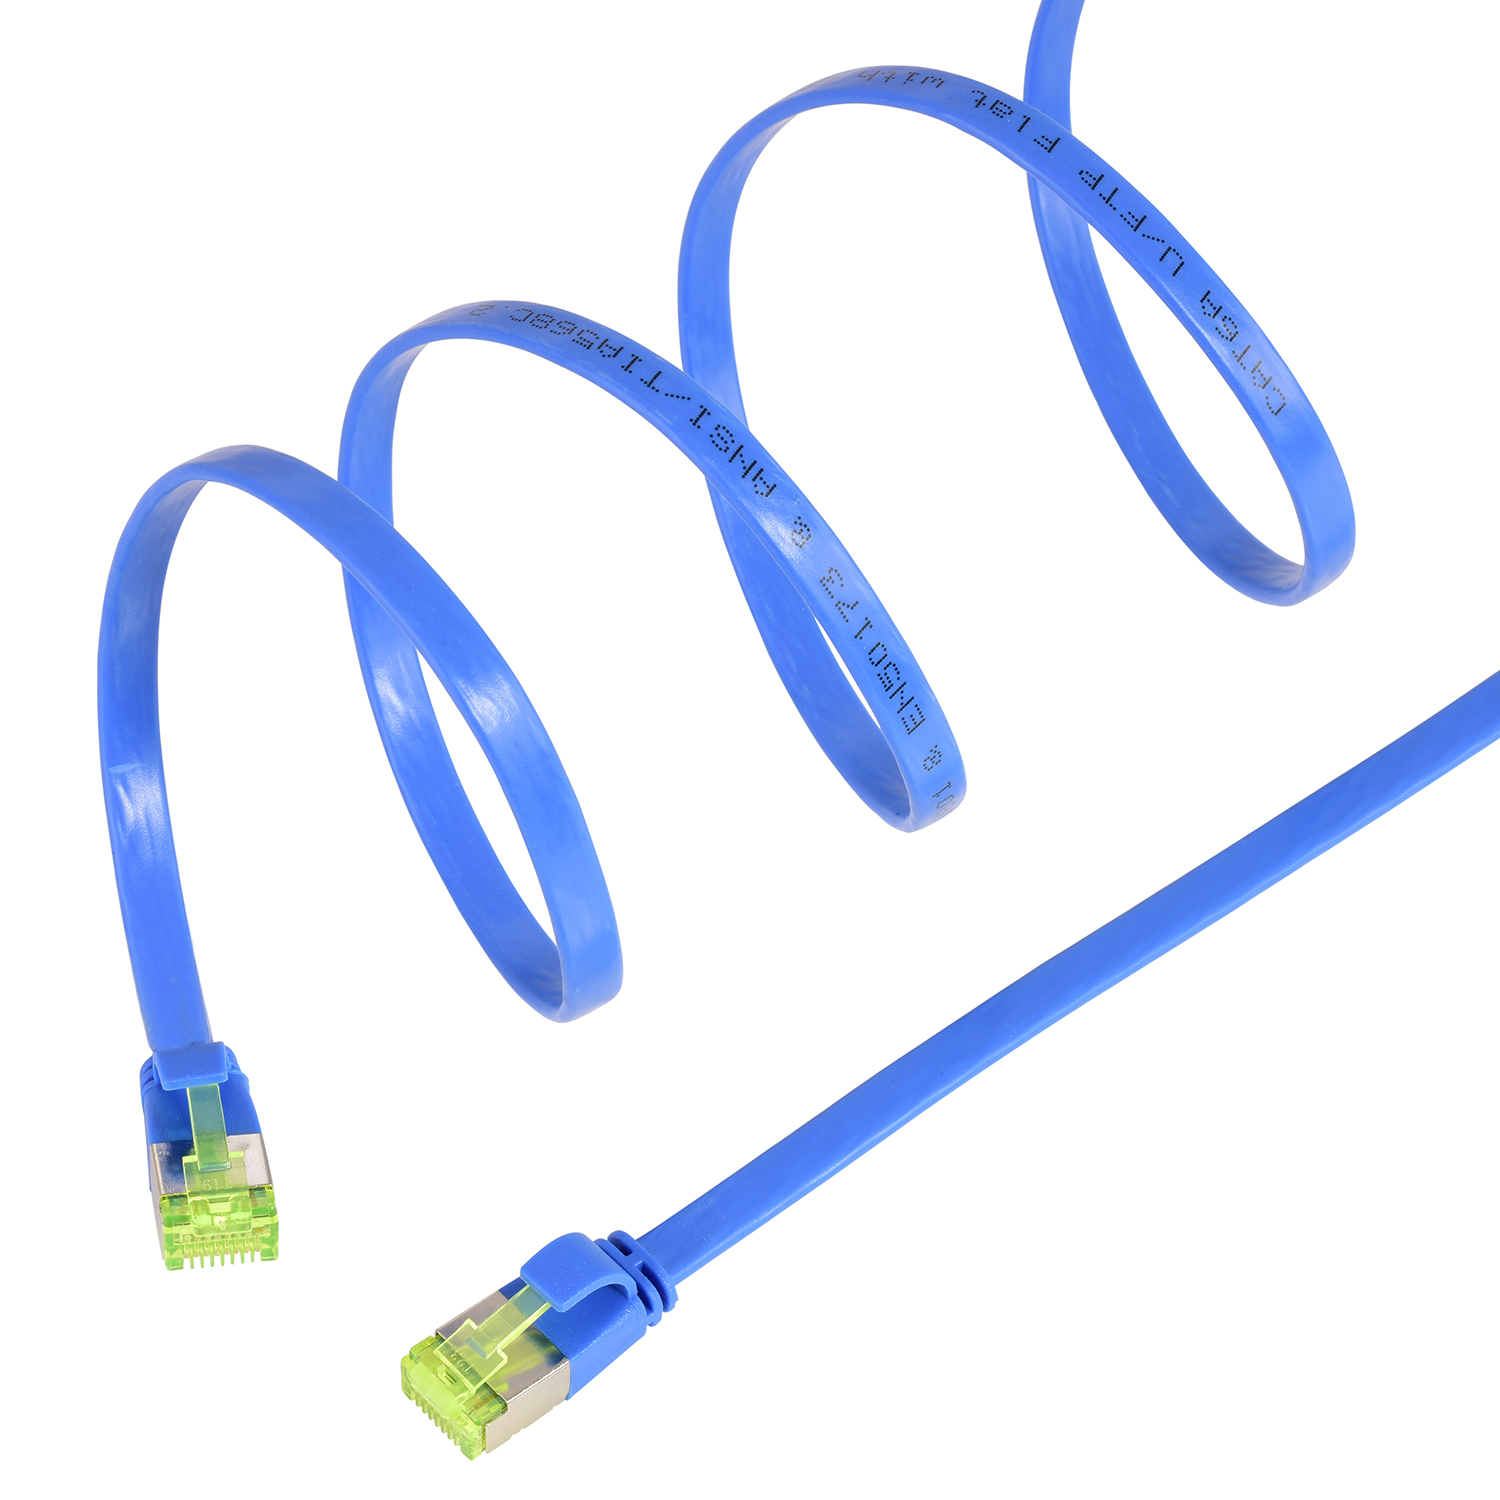 TPFNET 5m / Flachkabel Netzwerkkabel, m 10 GBit, U/FTP blau, 5 Patchkabel